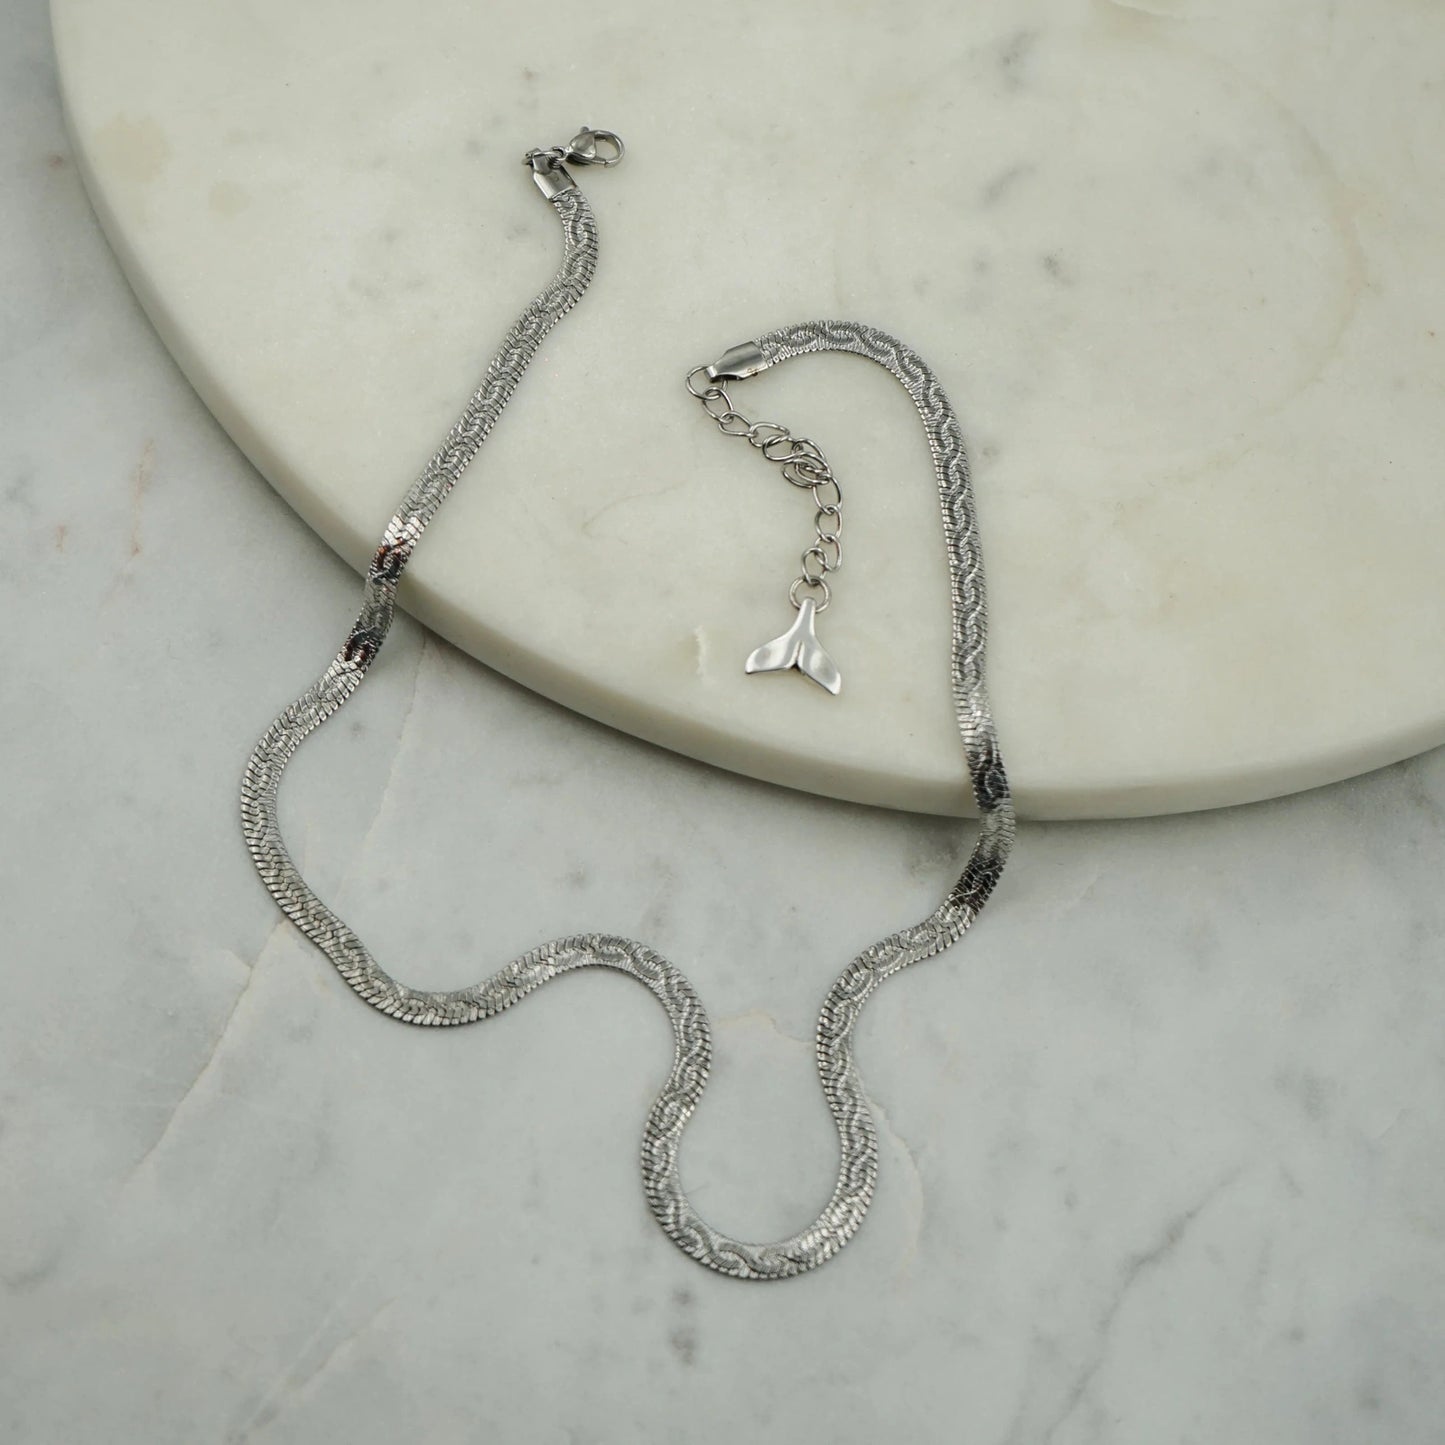 Chaîne argentée,dans un design de serpent, faite main par nos artisans.L'esprit grec minimaliste à son apogée. Portez-la avec d'autres chaînes ou colliers de notre collection de différentes longueurs et créez votre propre style "à la grecque" !